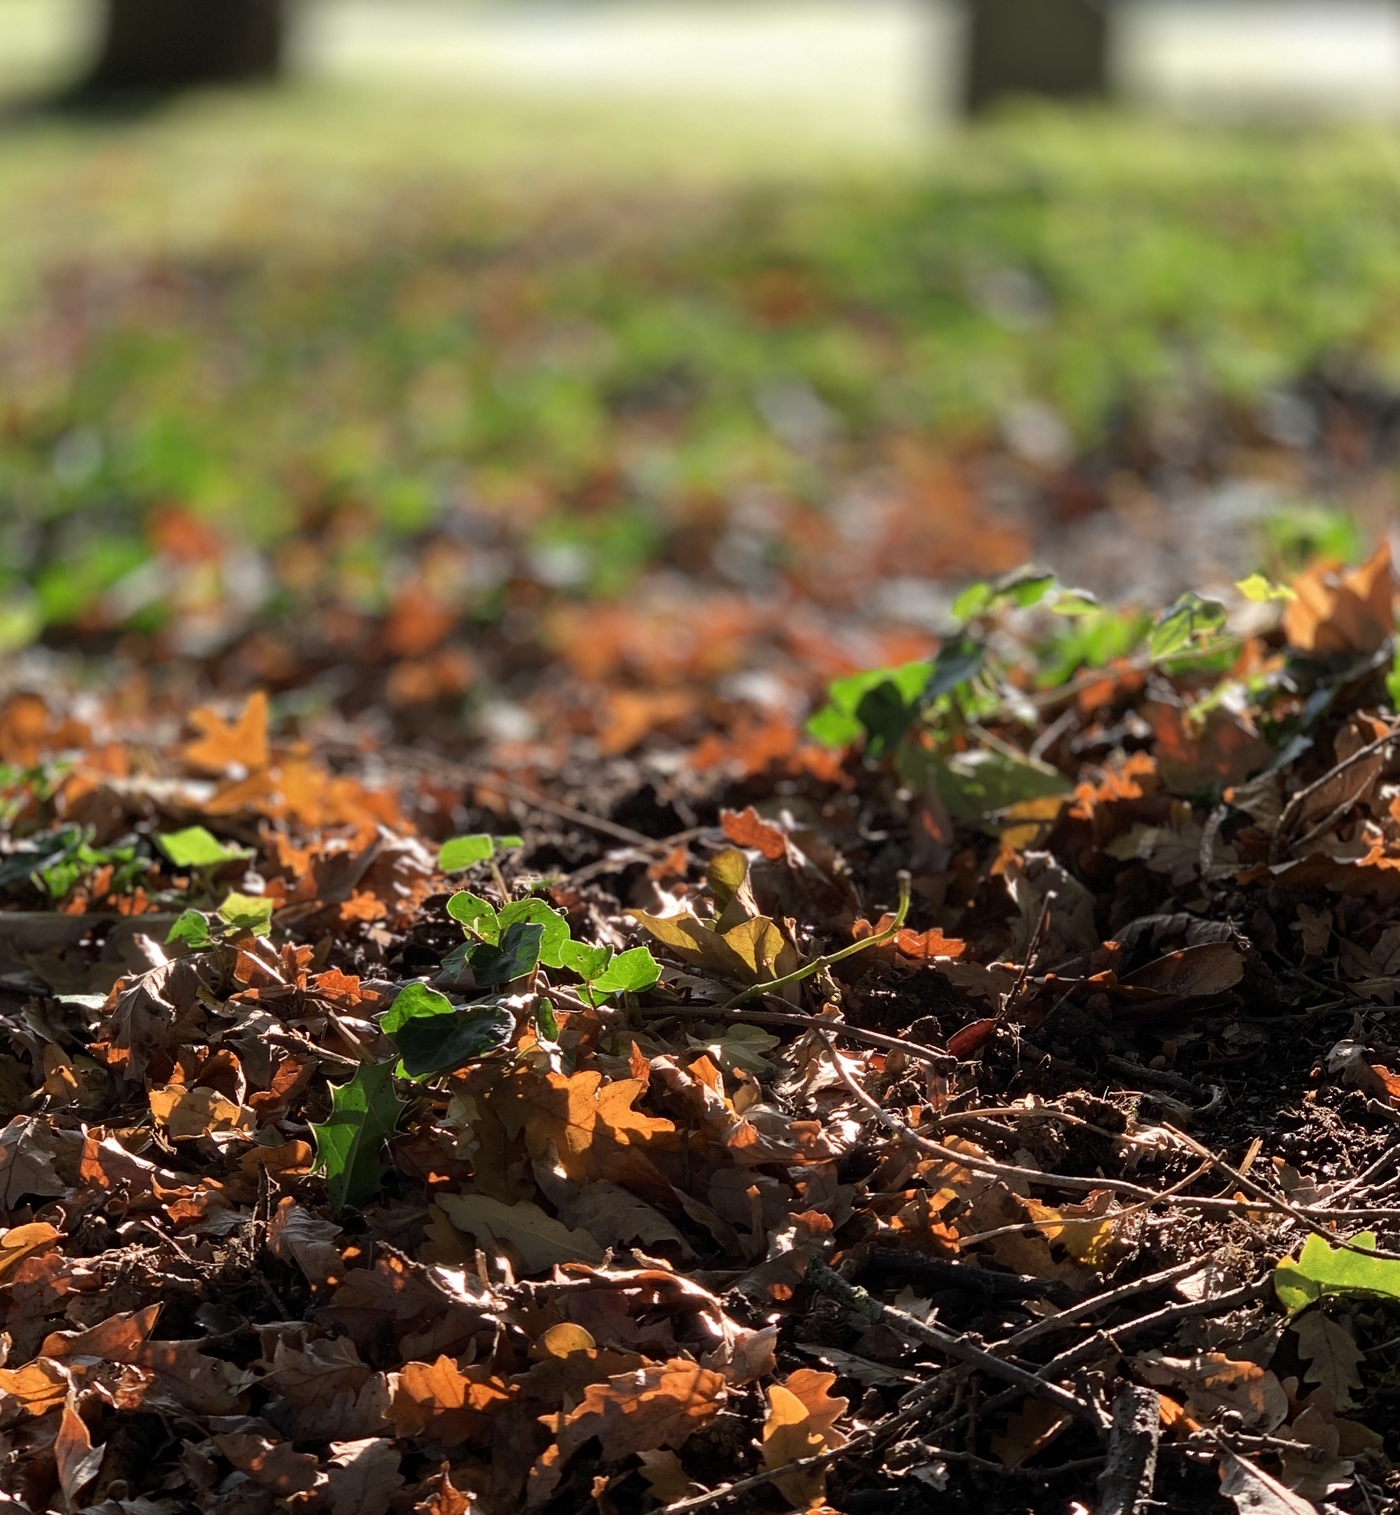 Soil in Kensington Gardens